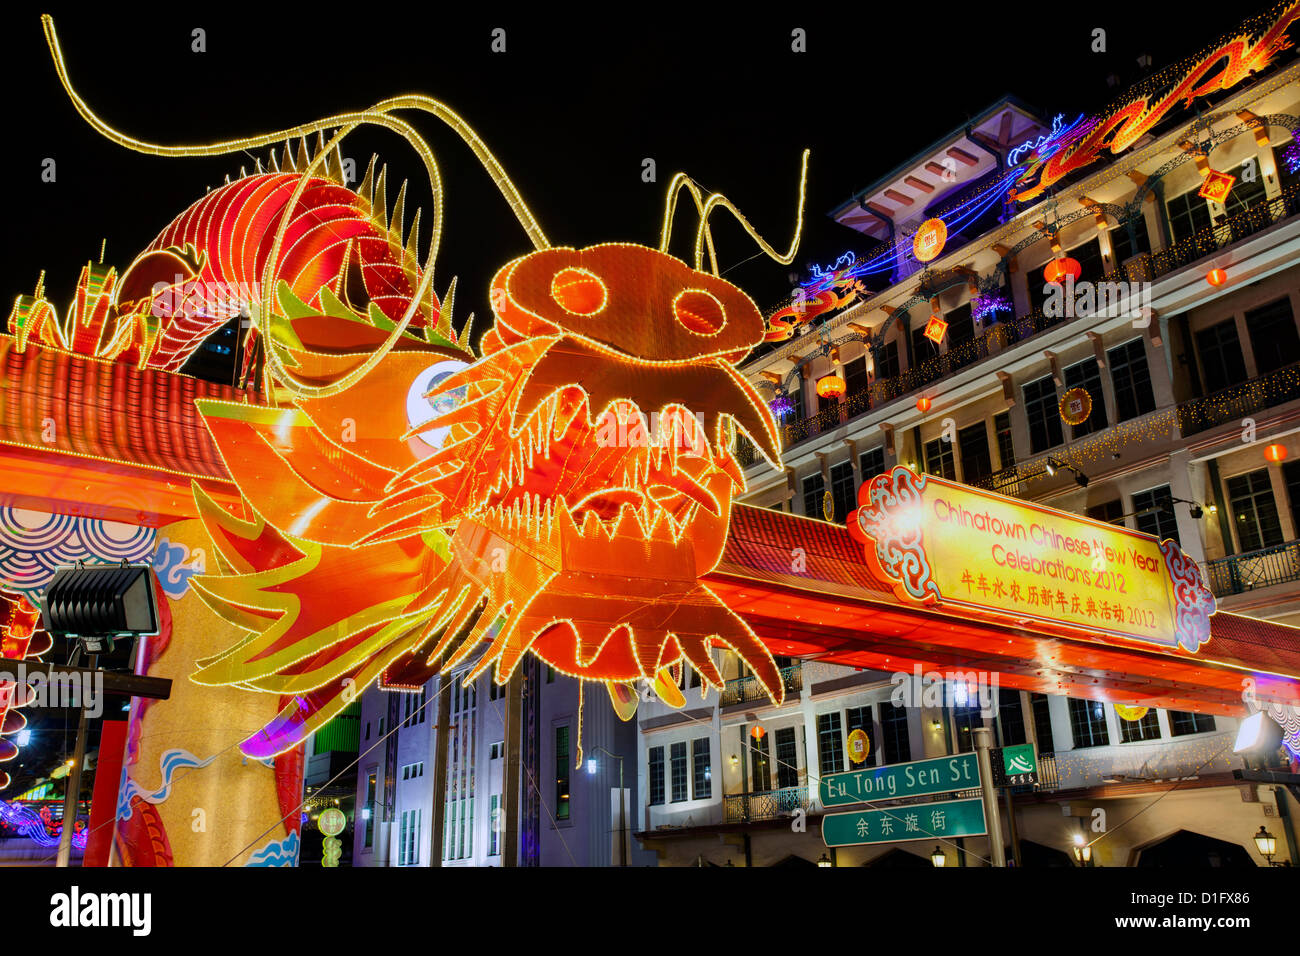 Les célébrations du Nouvel An chinois, New Bridge Road, Chinatown, Singapour, Asie du Sud, Asie Banque D'Images